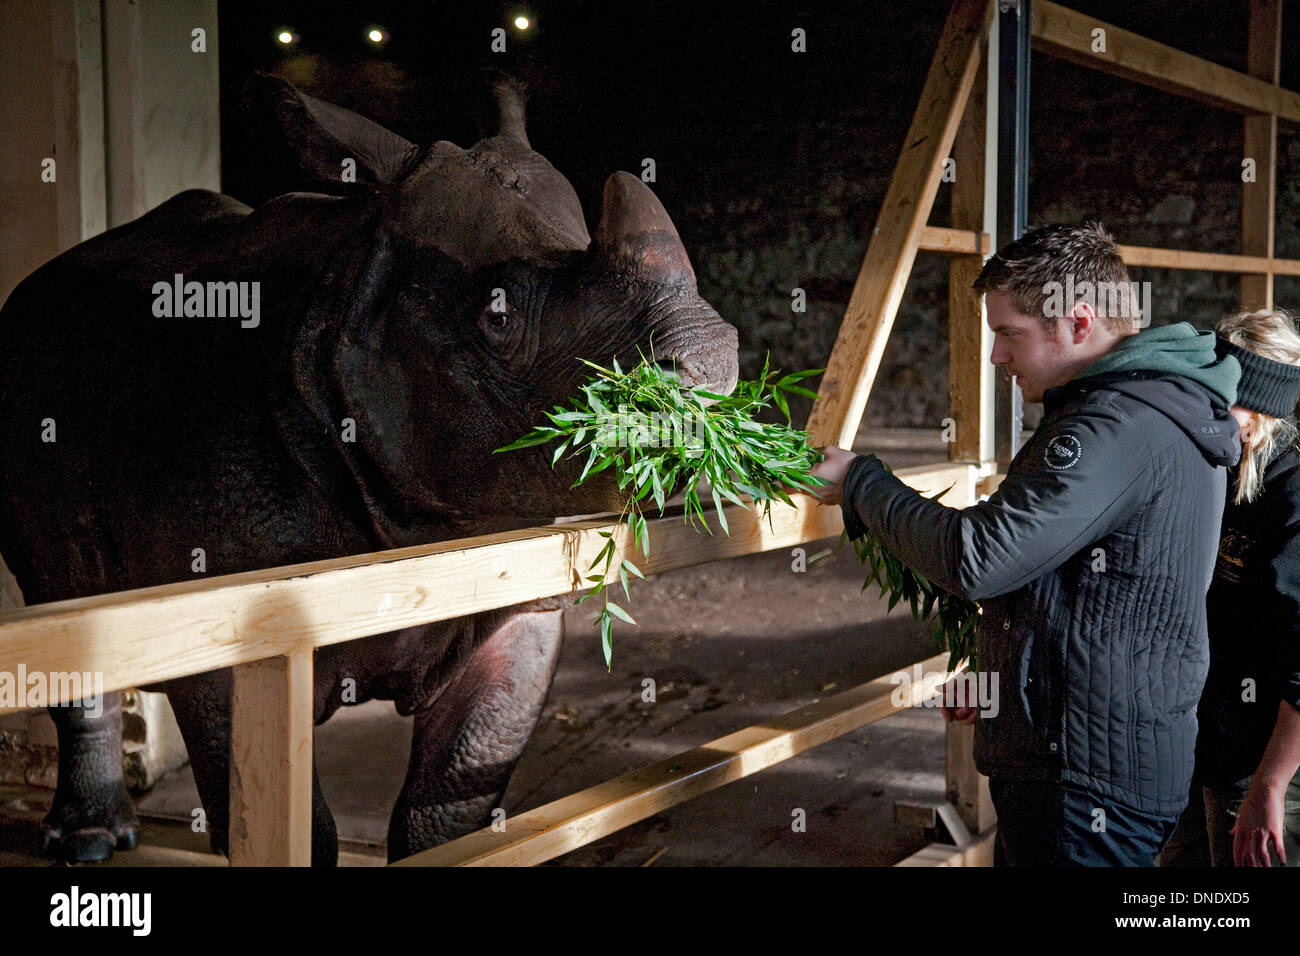 Les gardiens de zoo nourrir à un rhinocéros indien bumcrew Banque D'Images